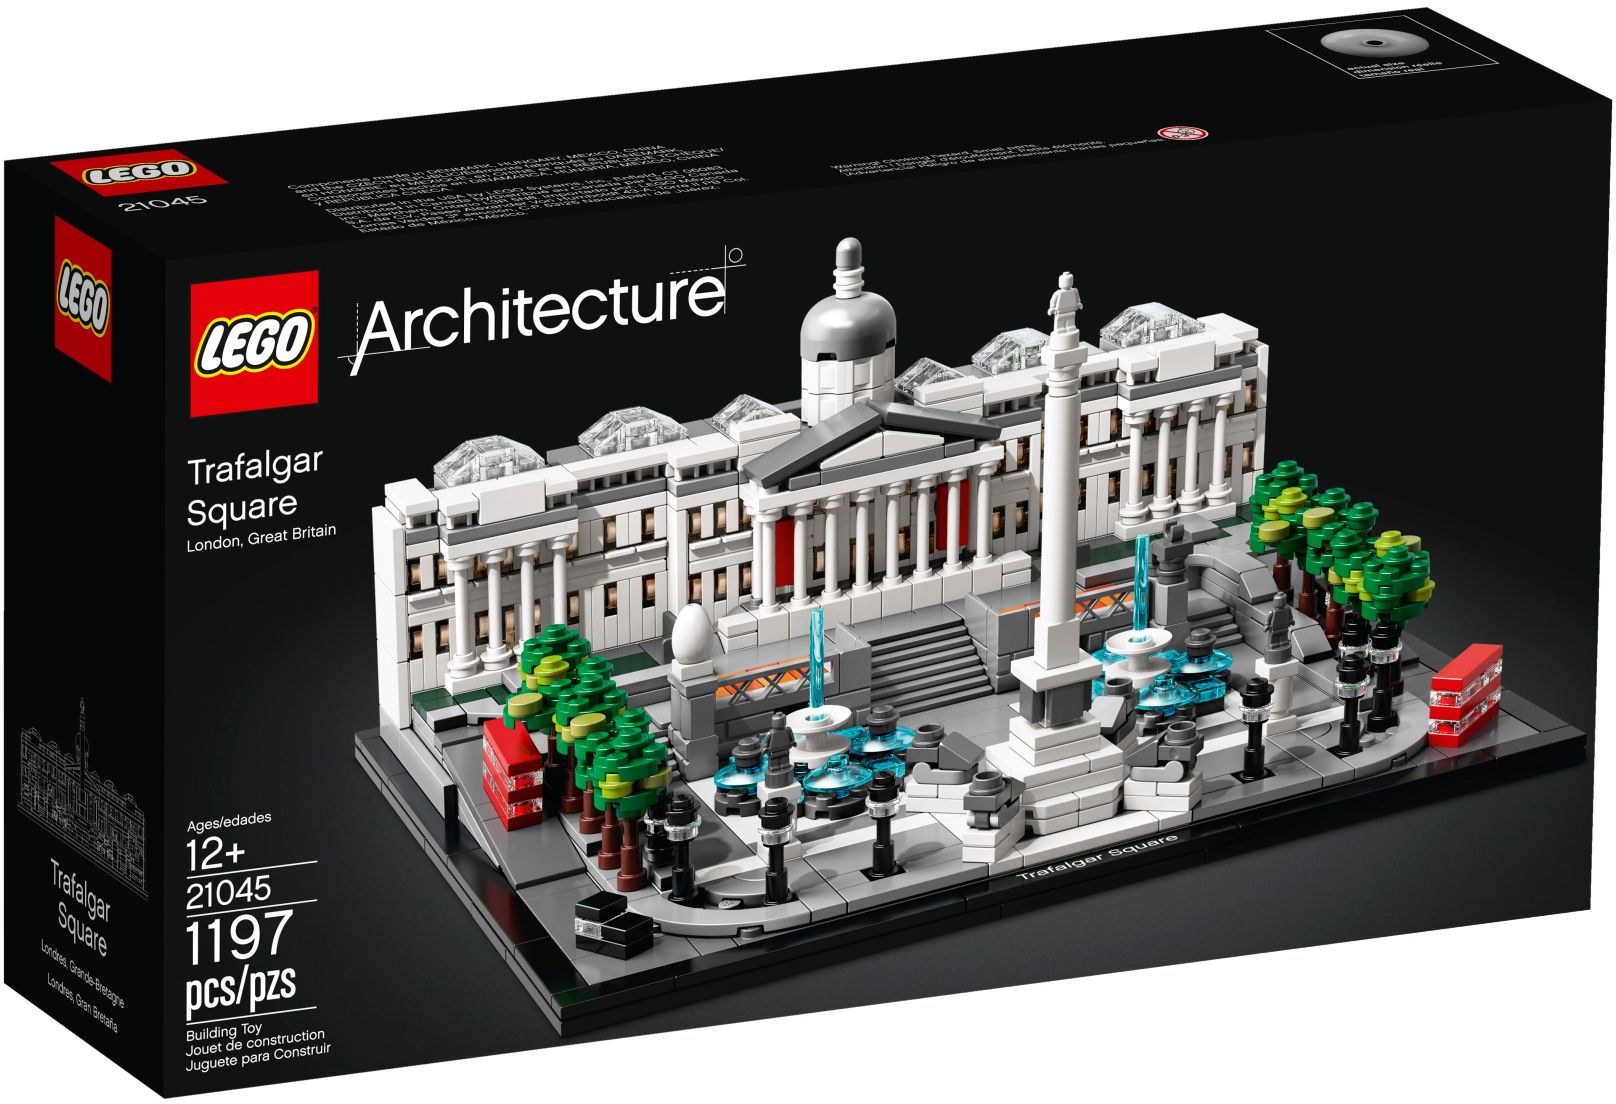 Trafalgar Square 18+ წელი - LEGO Toys - ლეგოს სათამაშოები